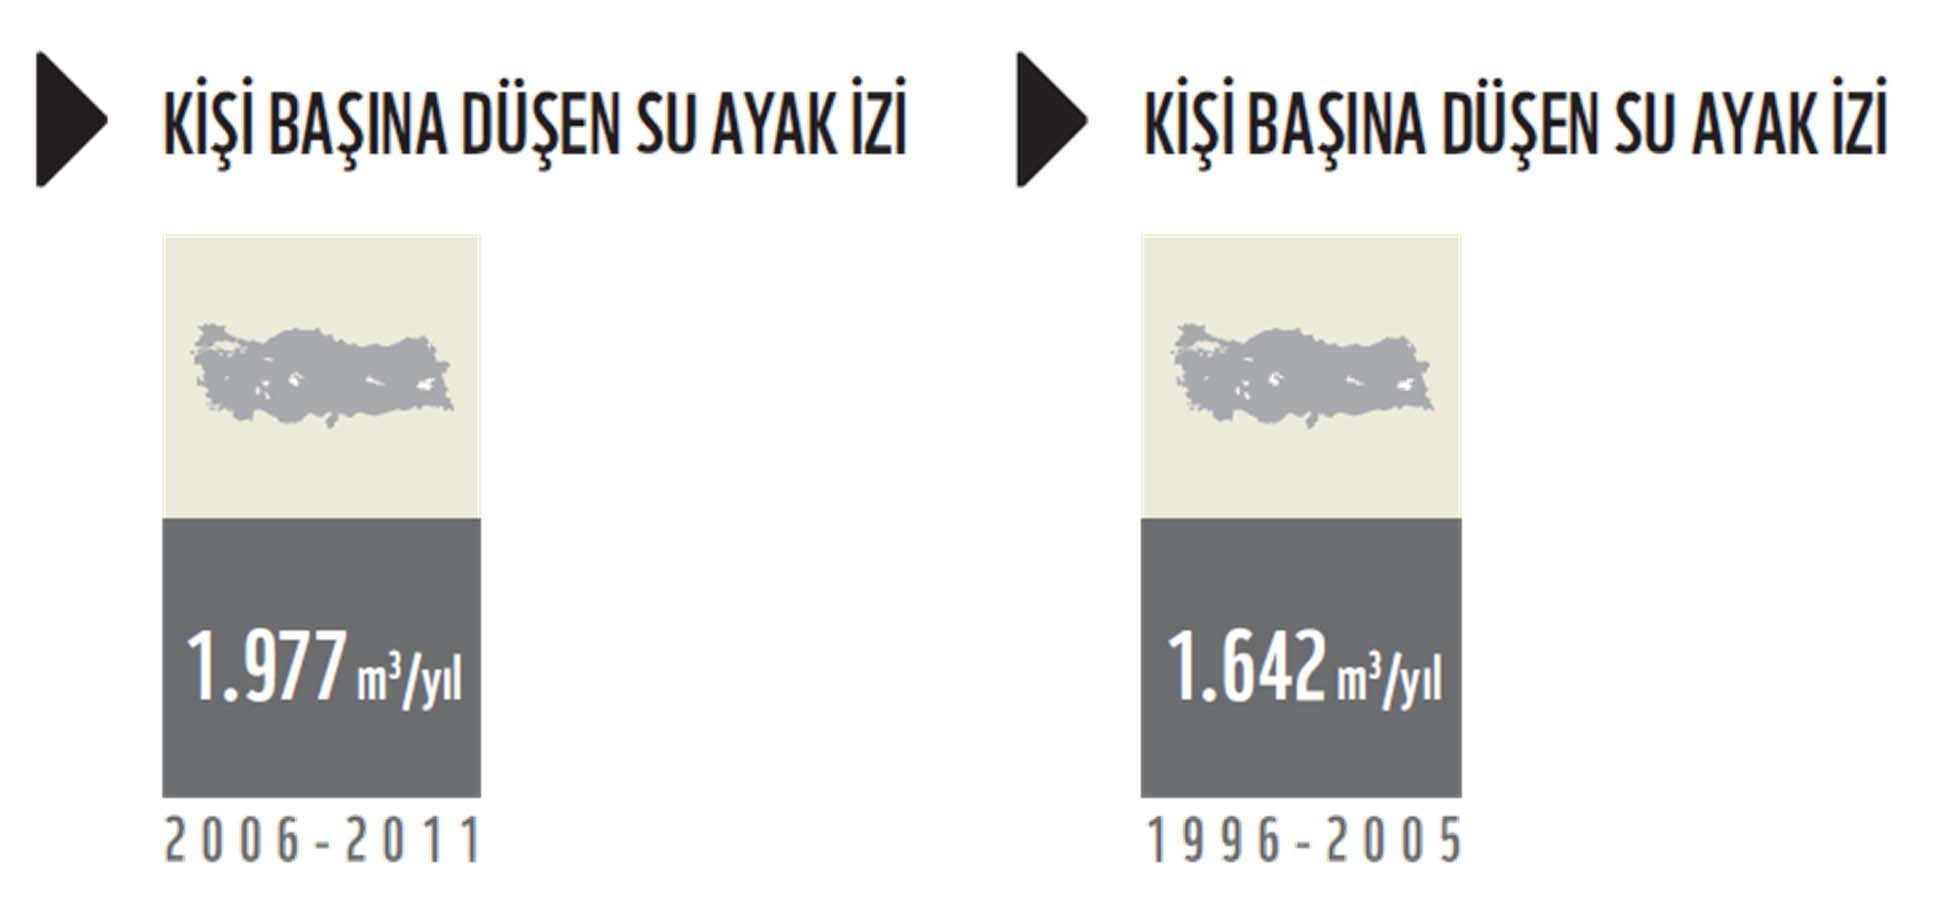 Türkiye nin Su Ayak İzi Raporu nda, 2006 2011 verileri kullanılarak Türkiye nin kişi başına düşen su ayak izi yeniden hesaplanmıştır.